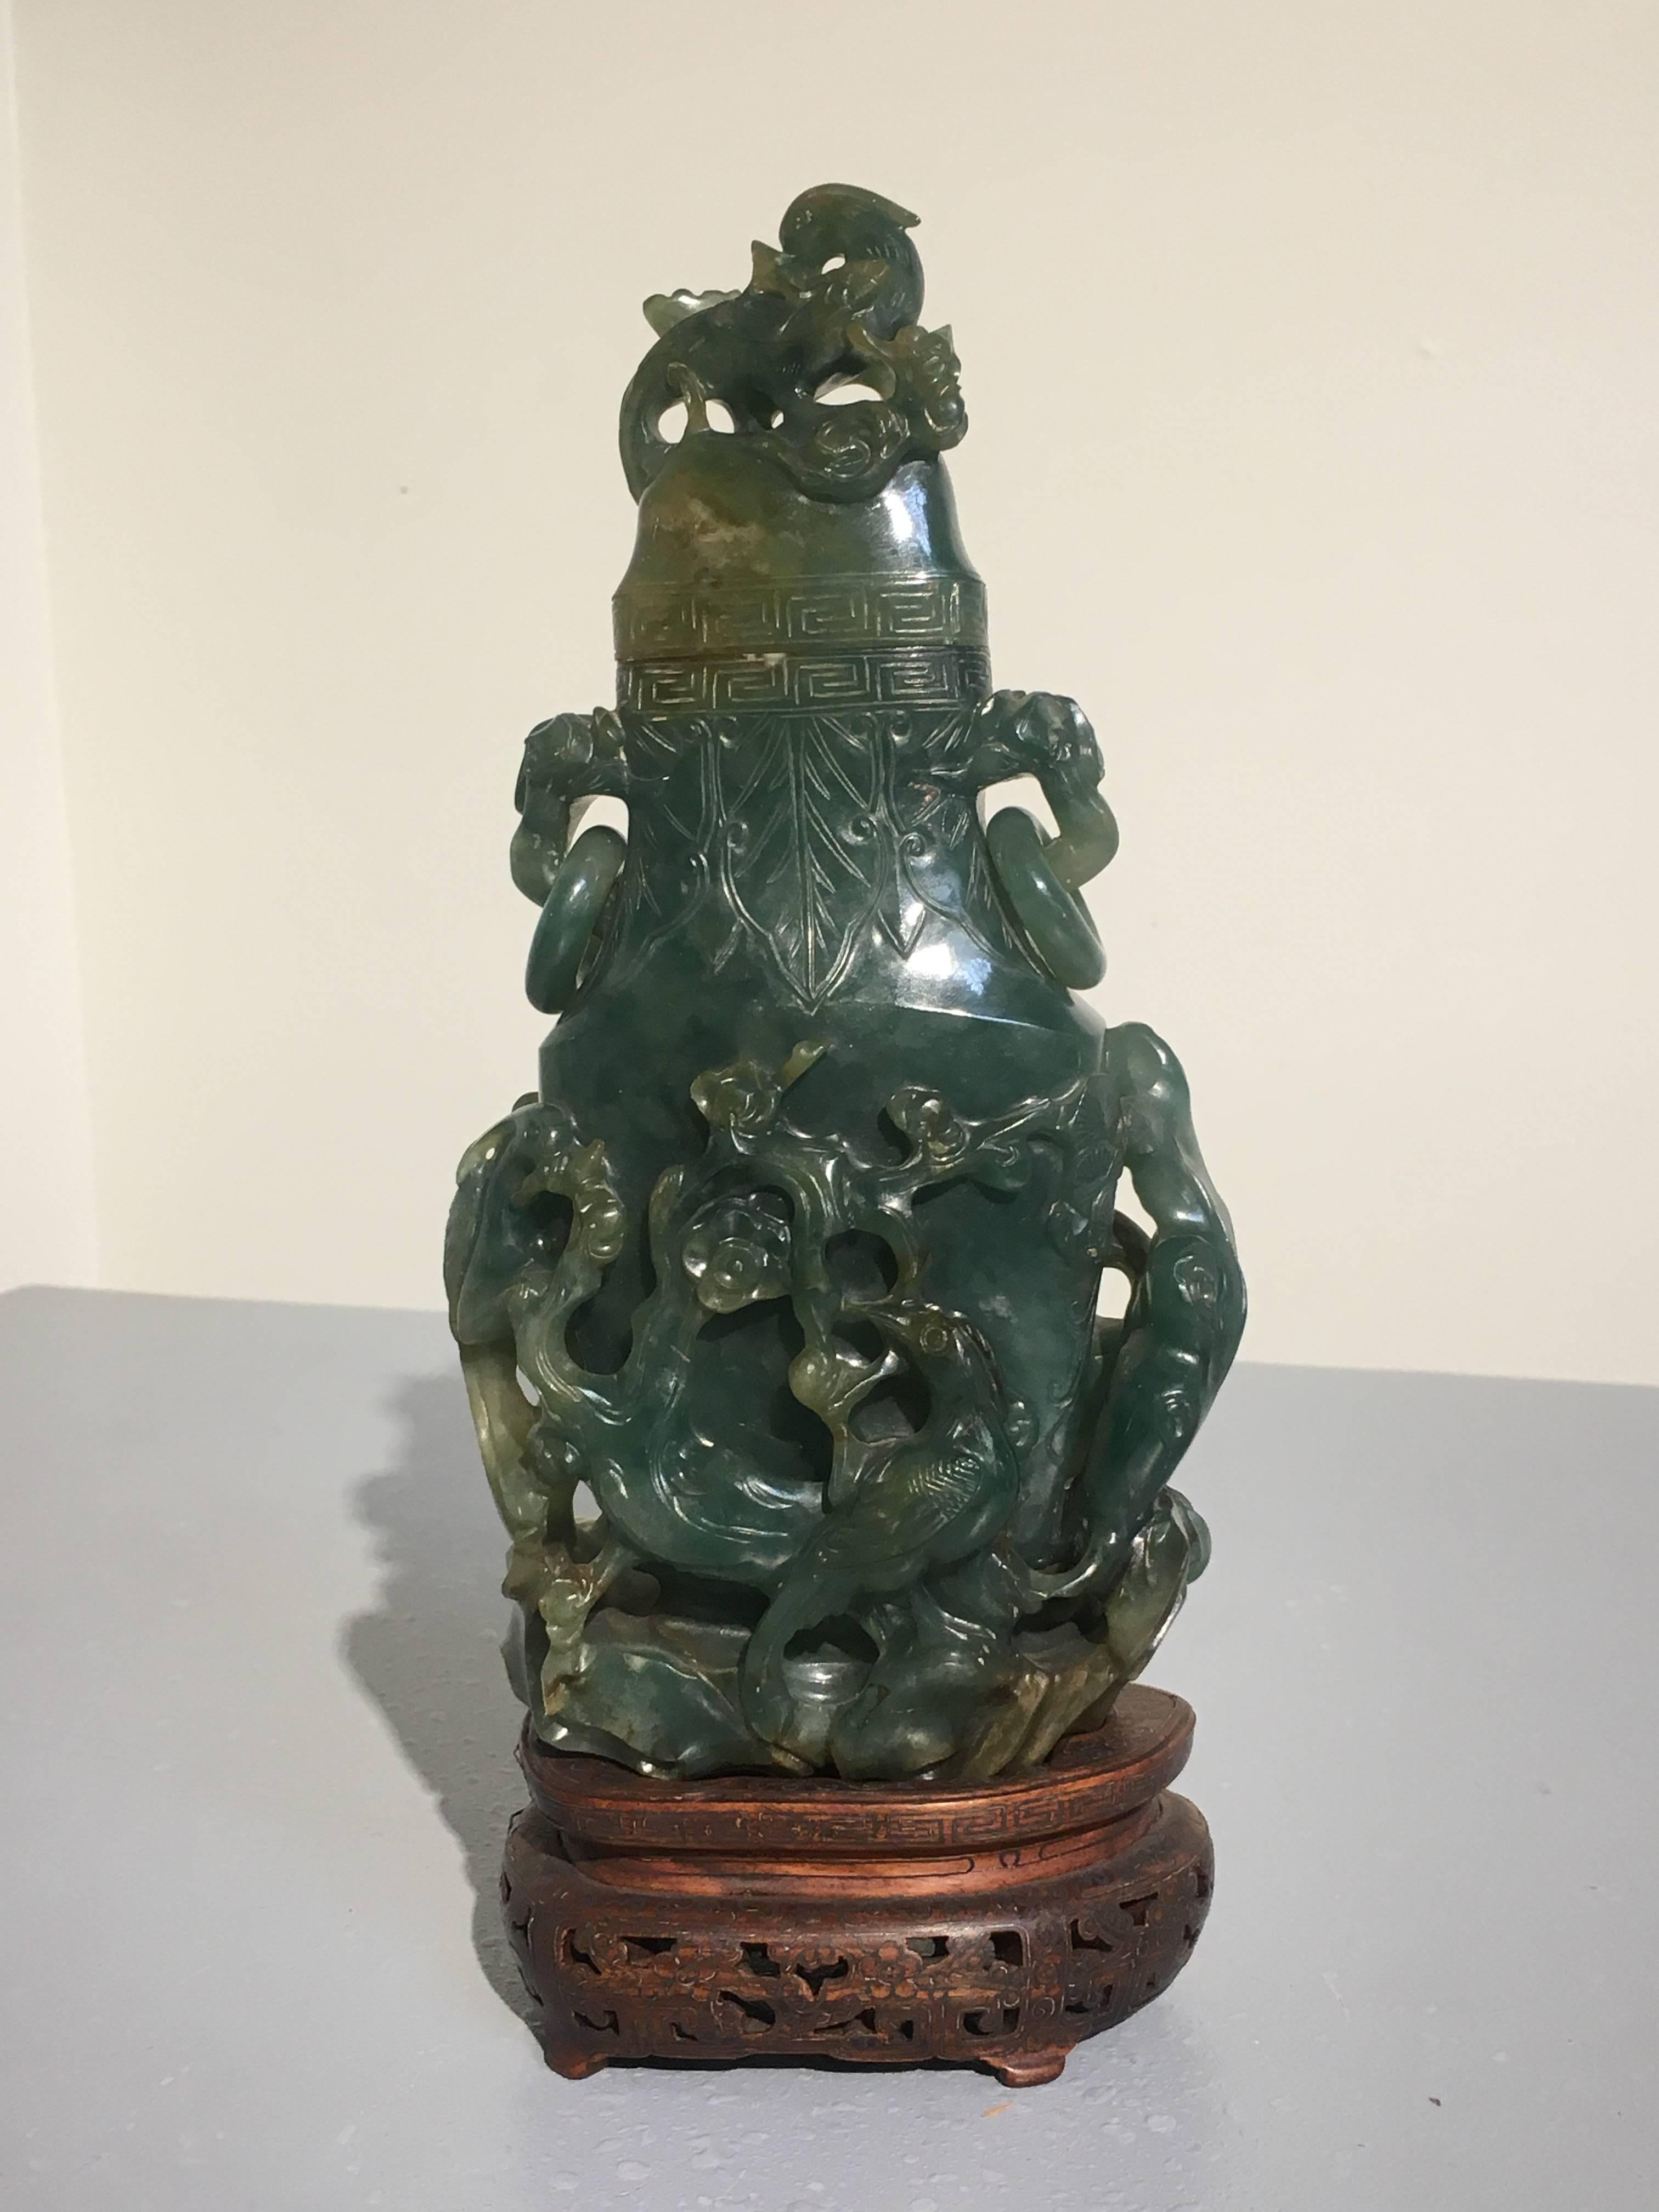 Superbe vase chinois en jade sculpté et percé, dynastie Qing, 19e siècle. Le vase est sculpté d'un motif d'oiseaux, de fleurs et d'arbres, tous chargés de sens. Le jade dense et lourd est d'une couleur vert bleuâtre profonde et uniforme, avec de